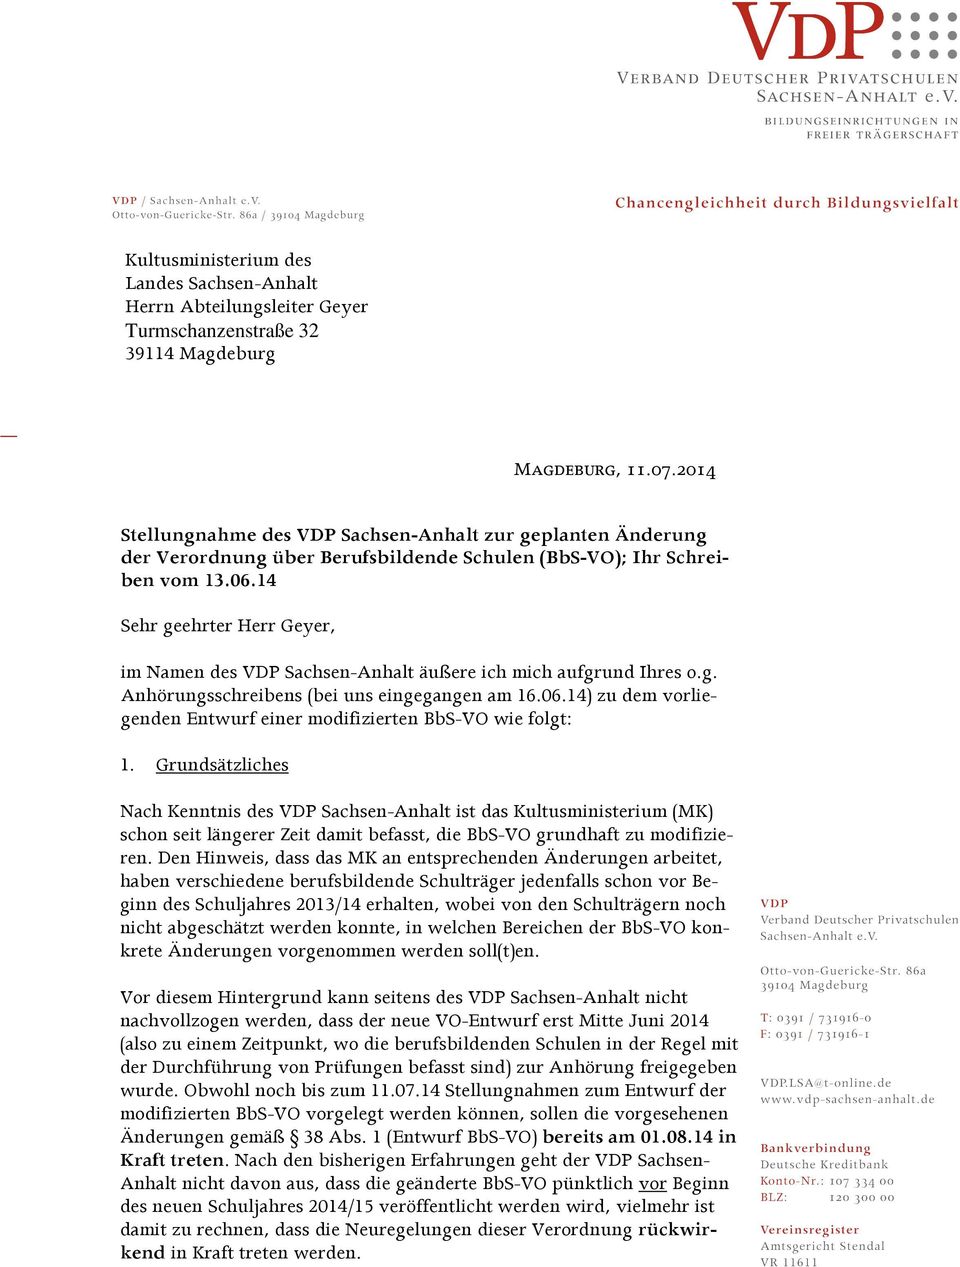 14 Sehr geehrter Herr Geyer, im Namen des VDP Sachsen-Anhalt äußere ich mich aufgrund Ihres o.g. Anhörungsschreibens (bei uns eingegangen am 16.06.